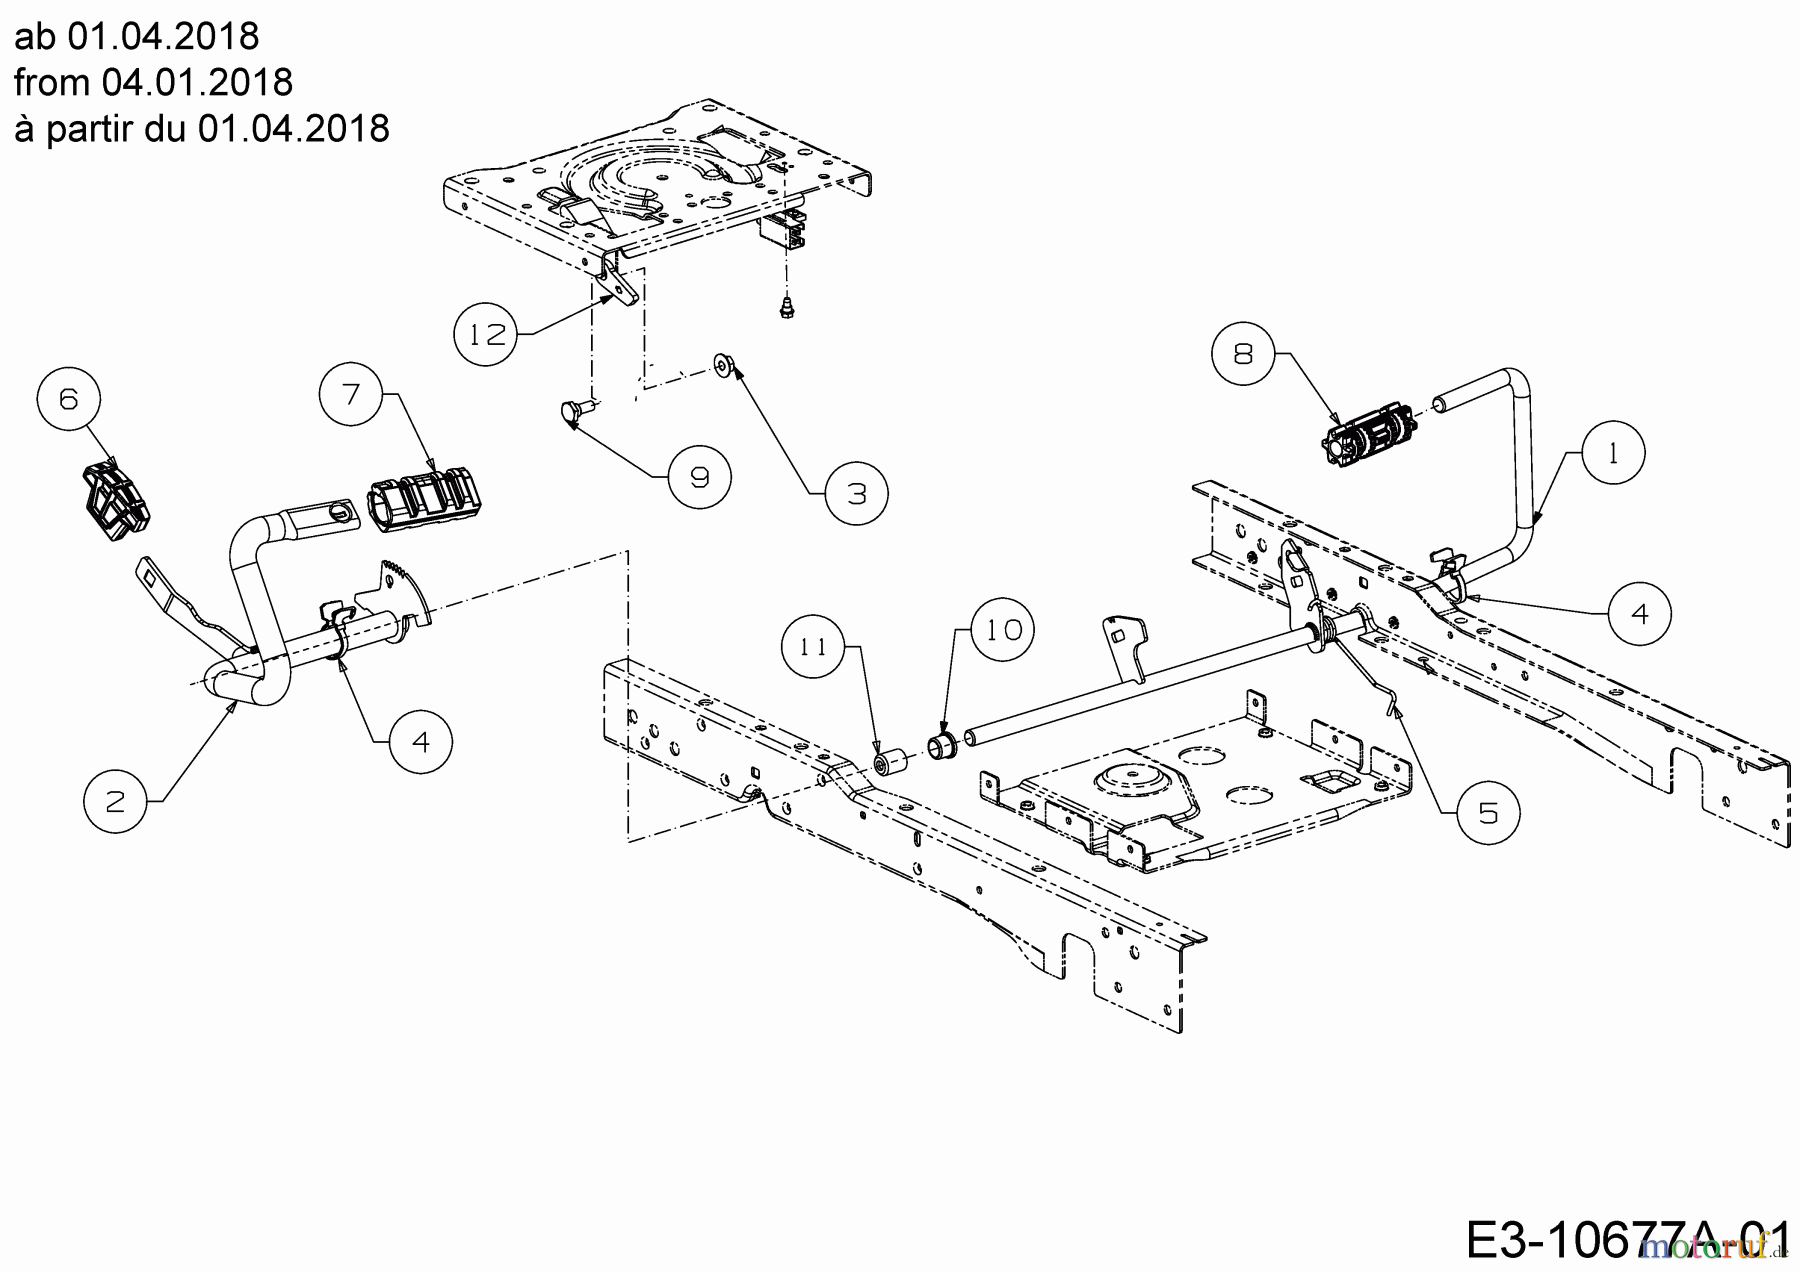  Cub Cadet Lawn tractors XT1 OS96 13C8A1CF603 (2021) Pedals from 04.01.2018